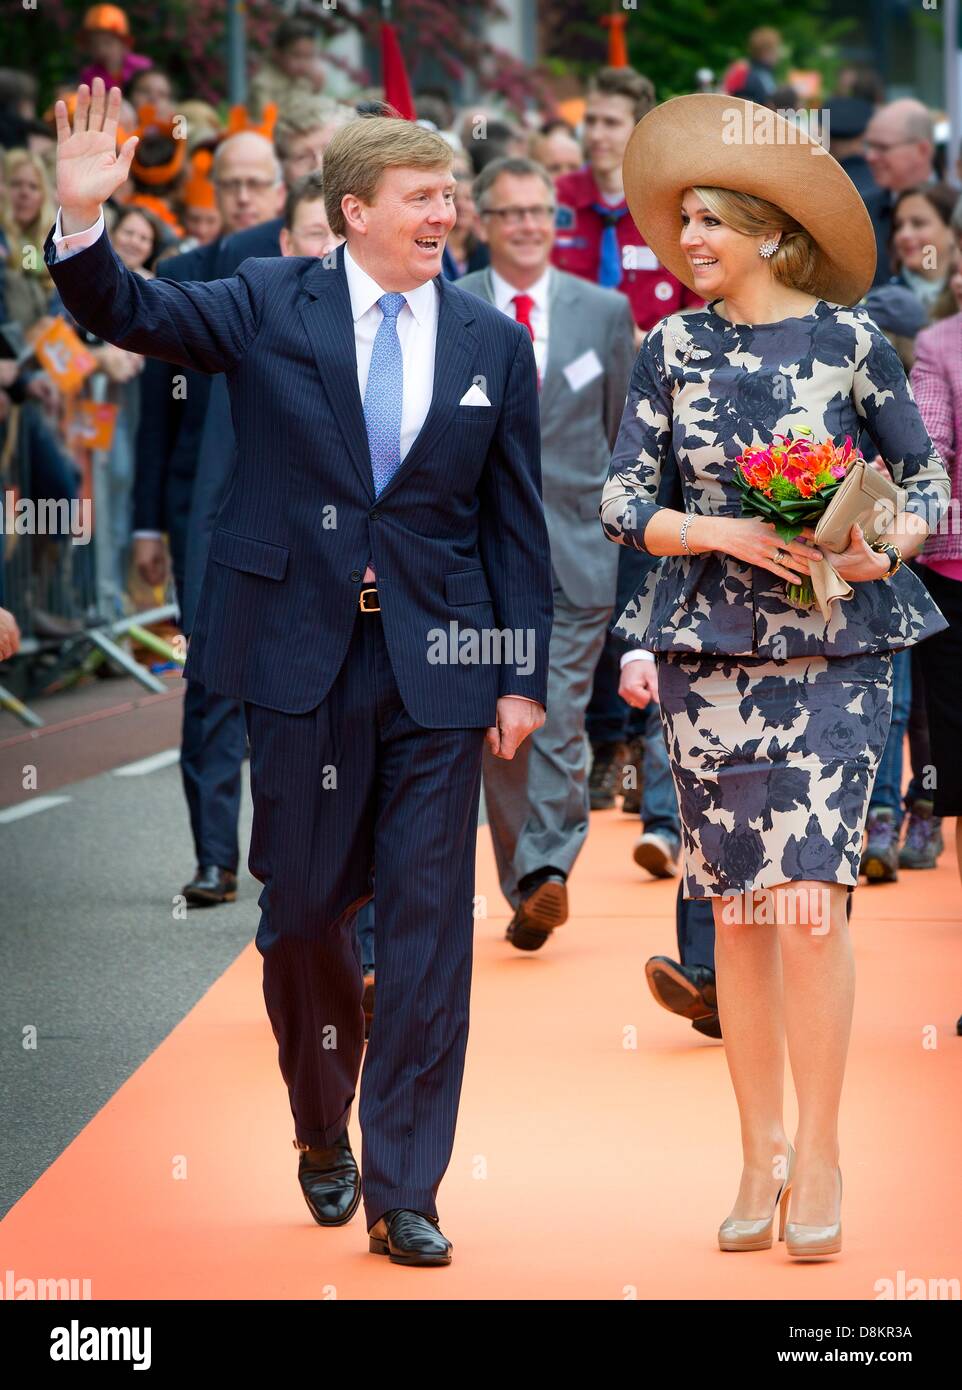 Le roi Willem-Alexander et Maxima La reine des Pays-Bas se rendre dans la  province de Gueldre pendant leur tournée à travers les Pays-Bas comme  nouveau roi et reine. Le Roi et la